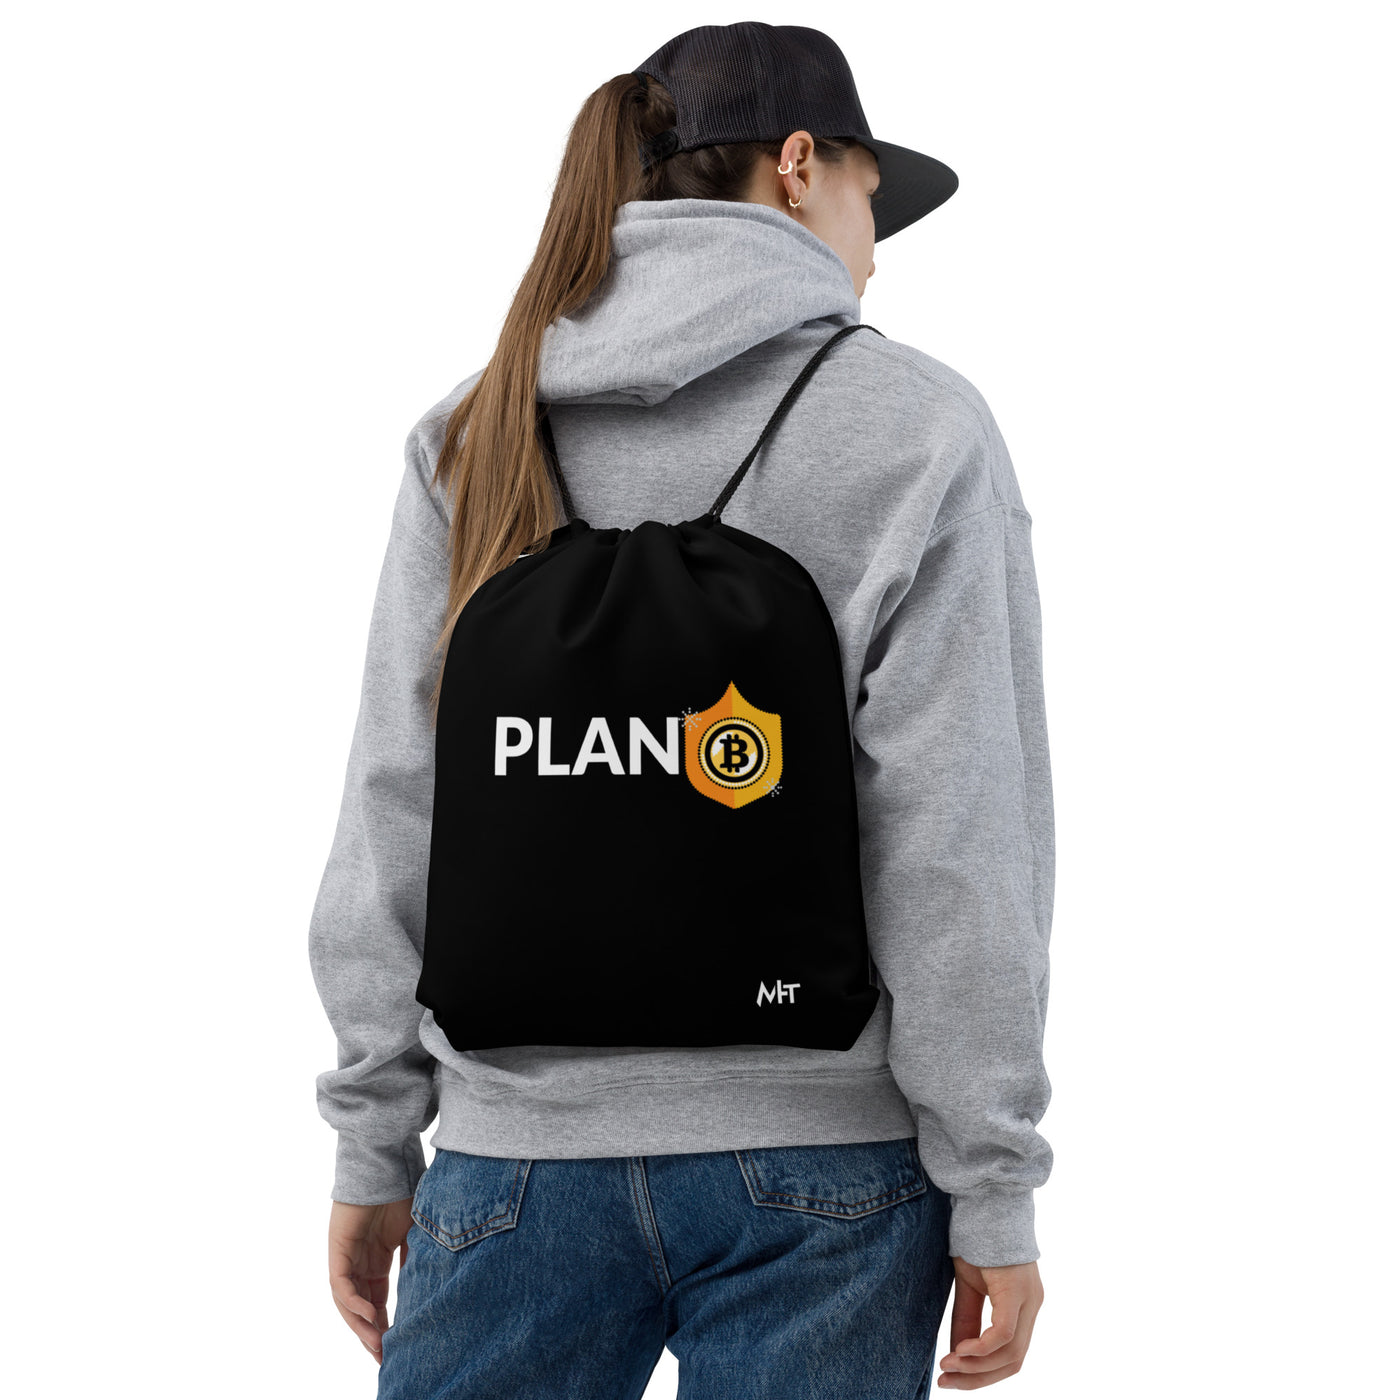 Plan B v2 - Drawstring bag